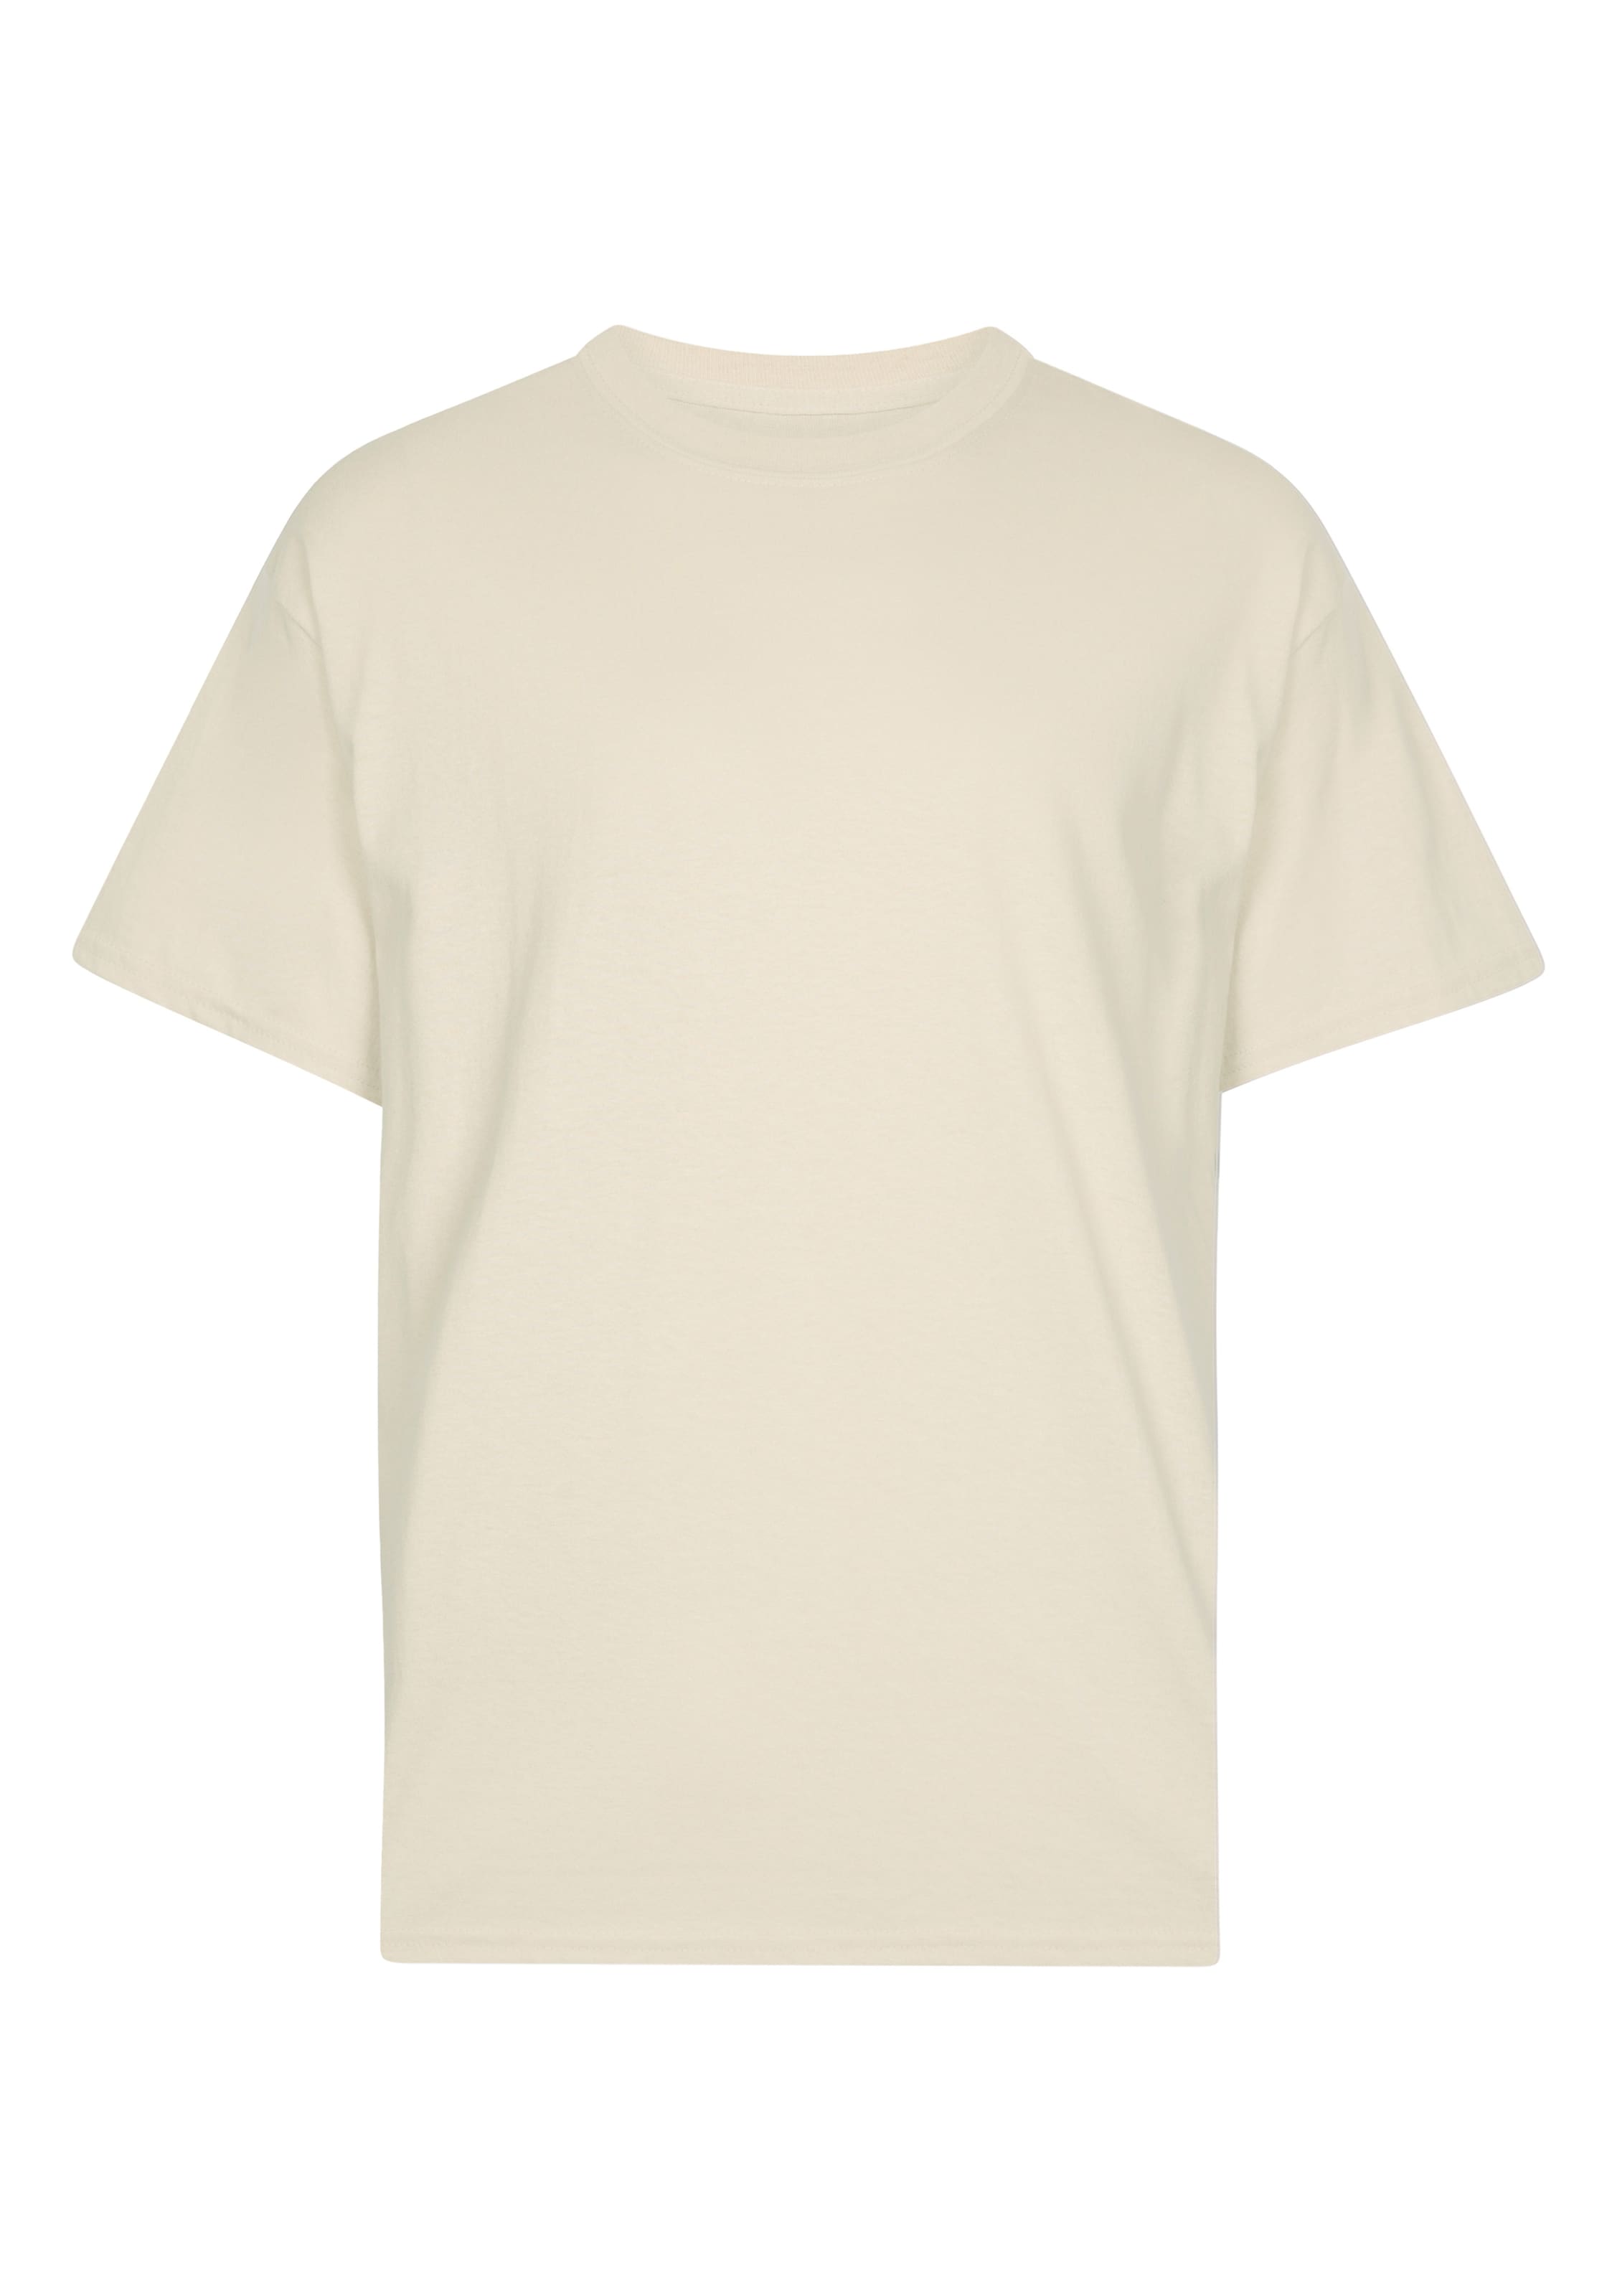 Frauen Shirts & Tops New Love Club Shirt 'PEAR' in Sand - RO83486